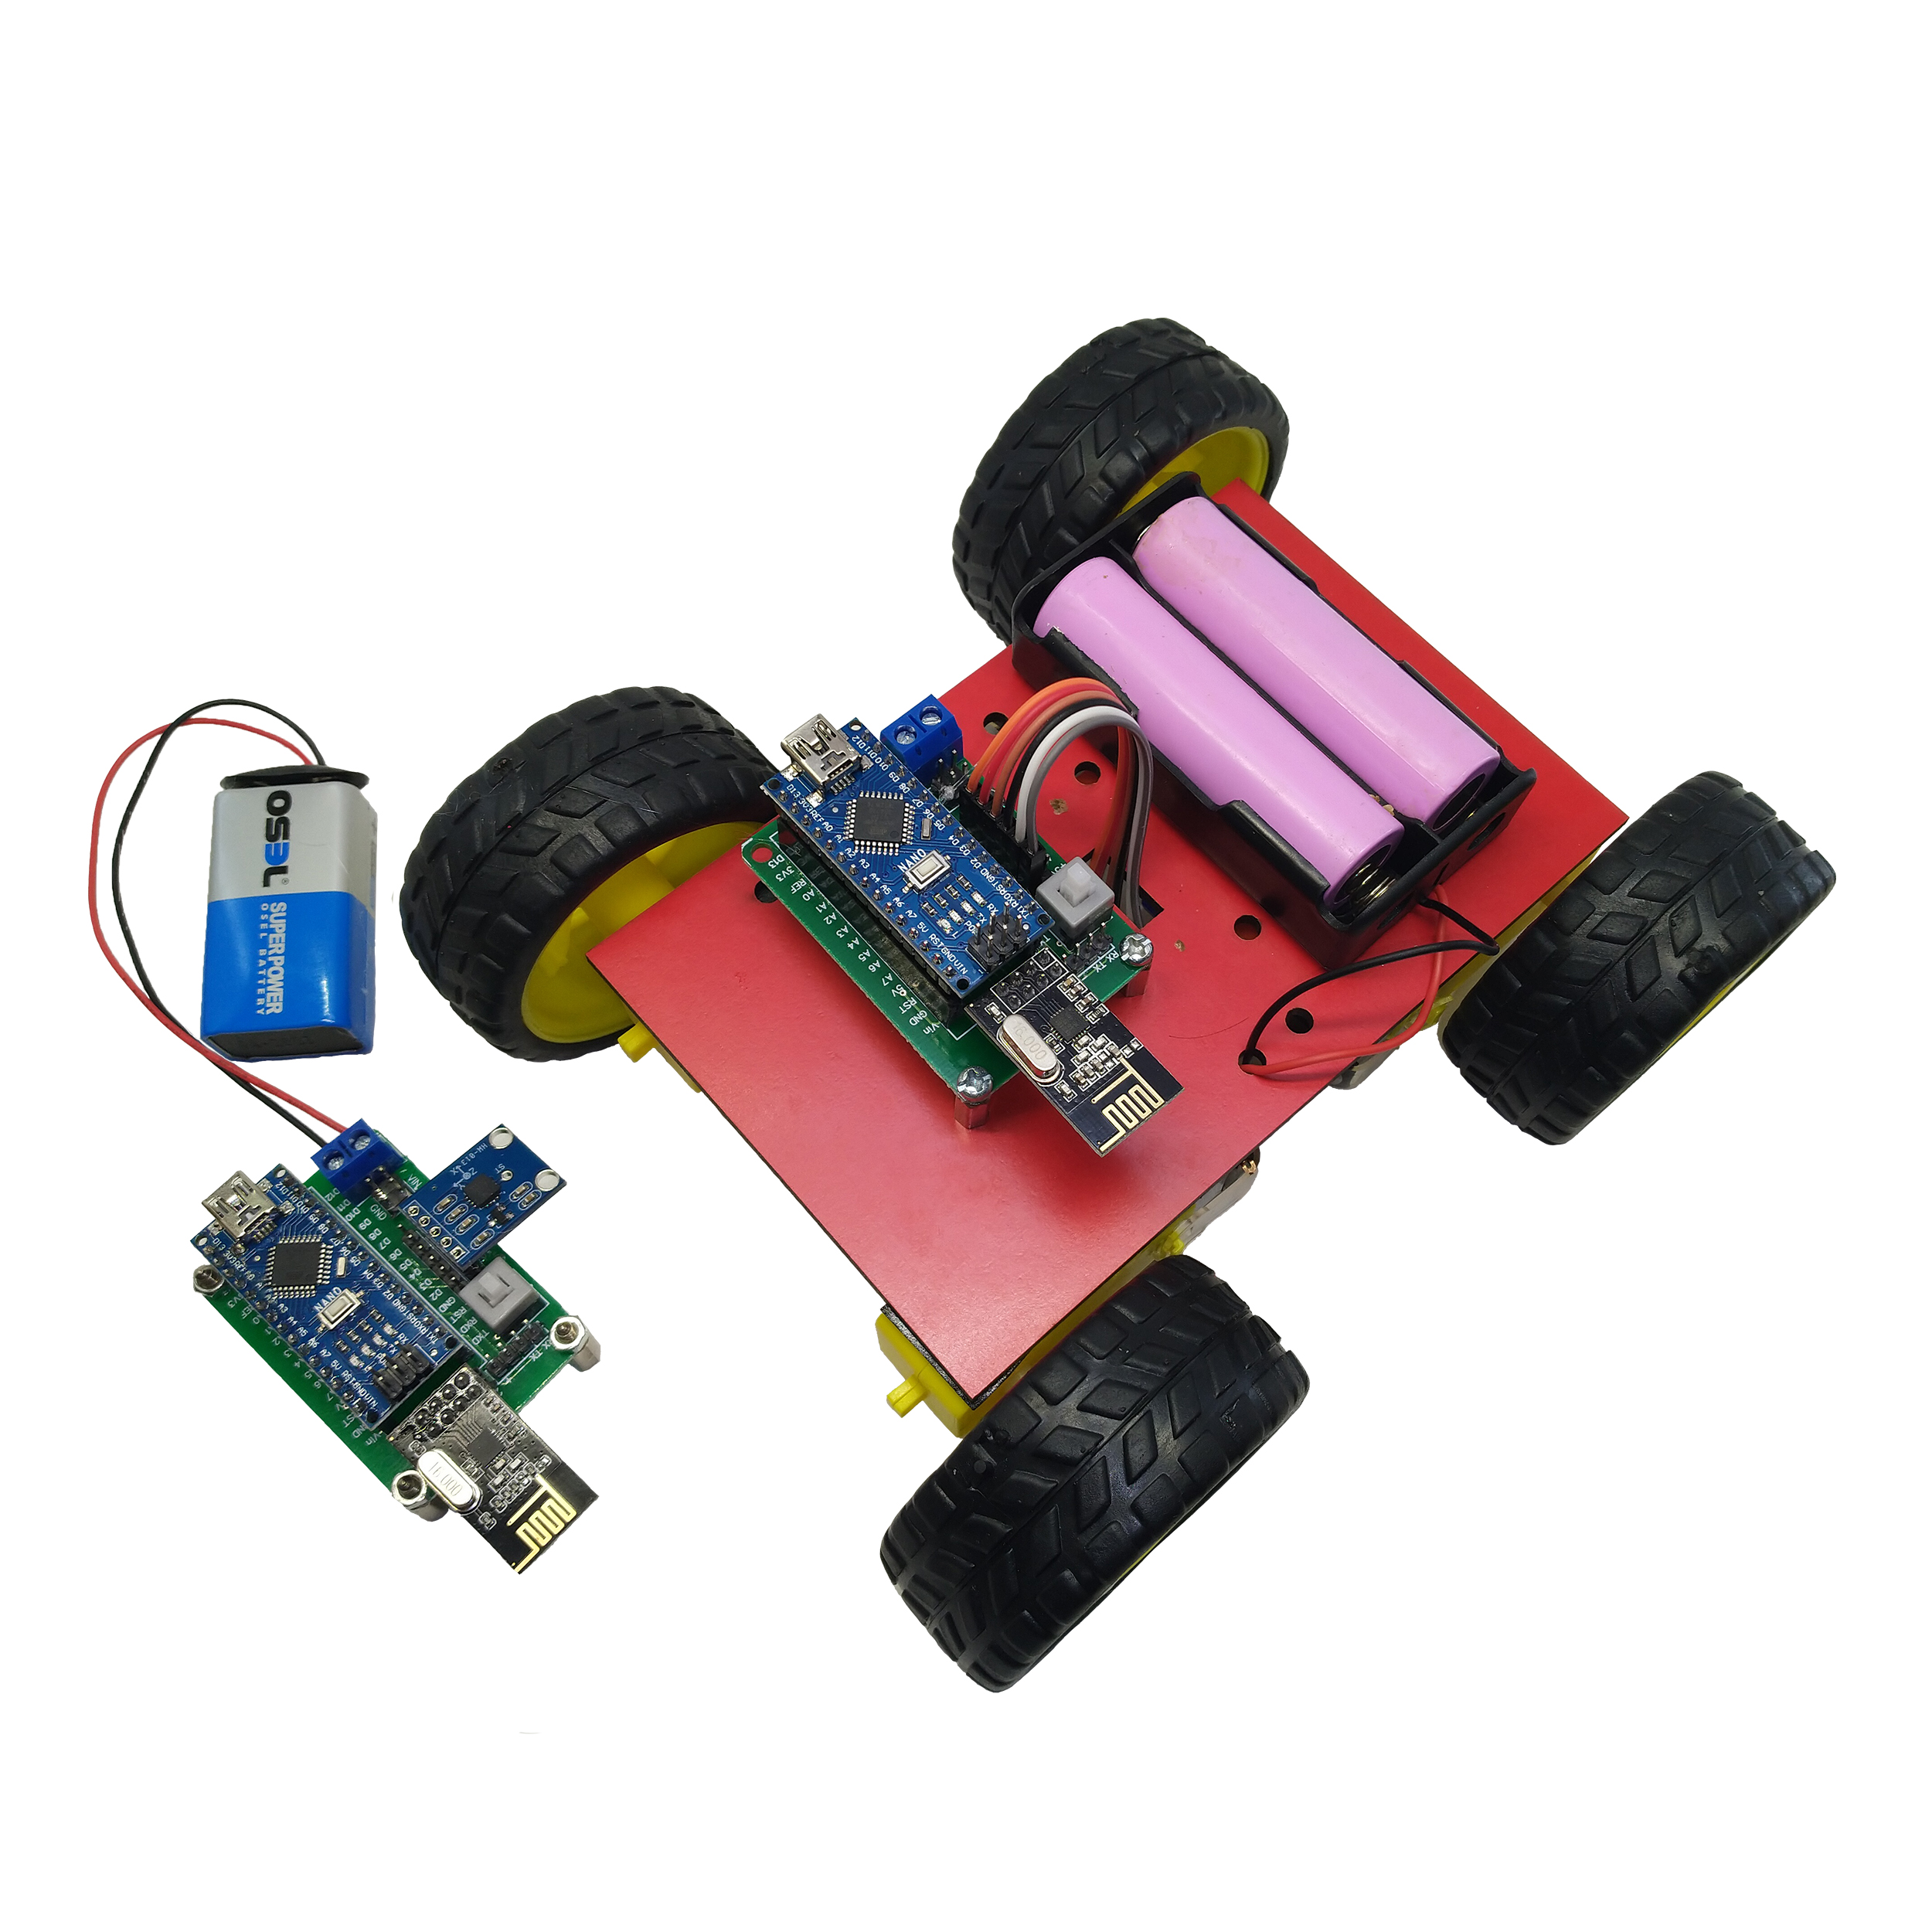 نکته خرید - قیمت روز کیت رباتیک آوات روبو مدل کنترل از راه دور با حرکات دست خرید